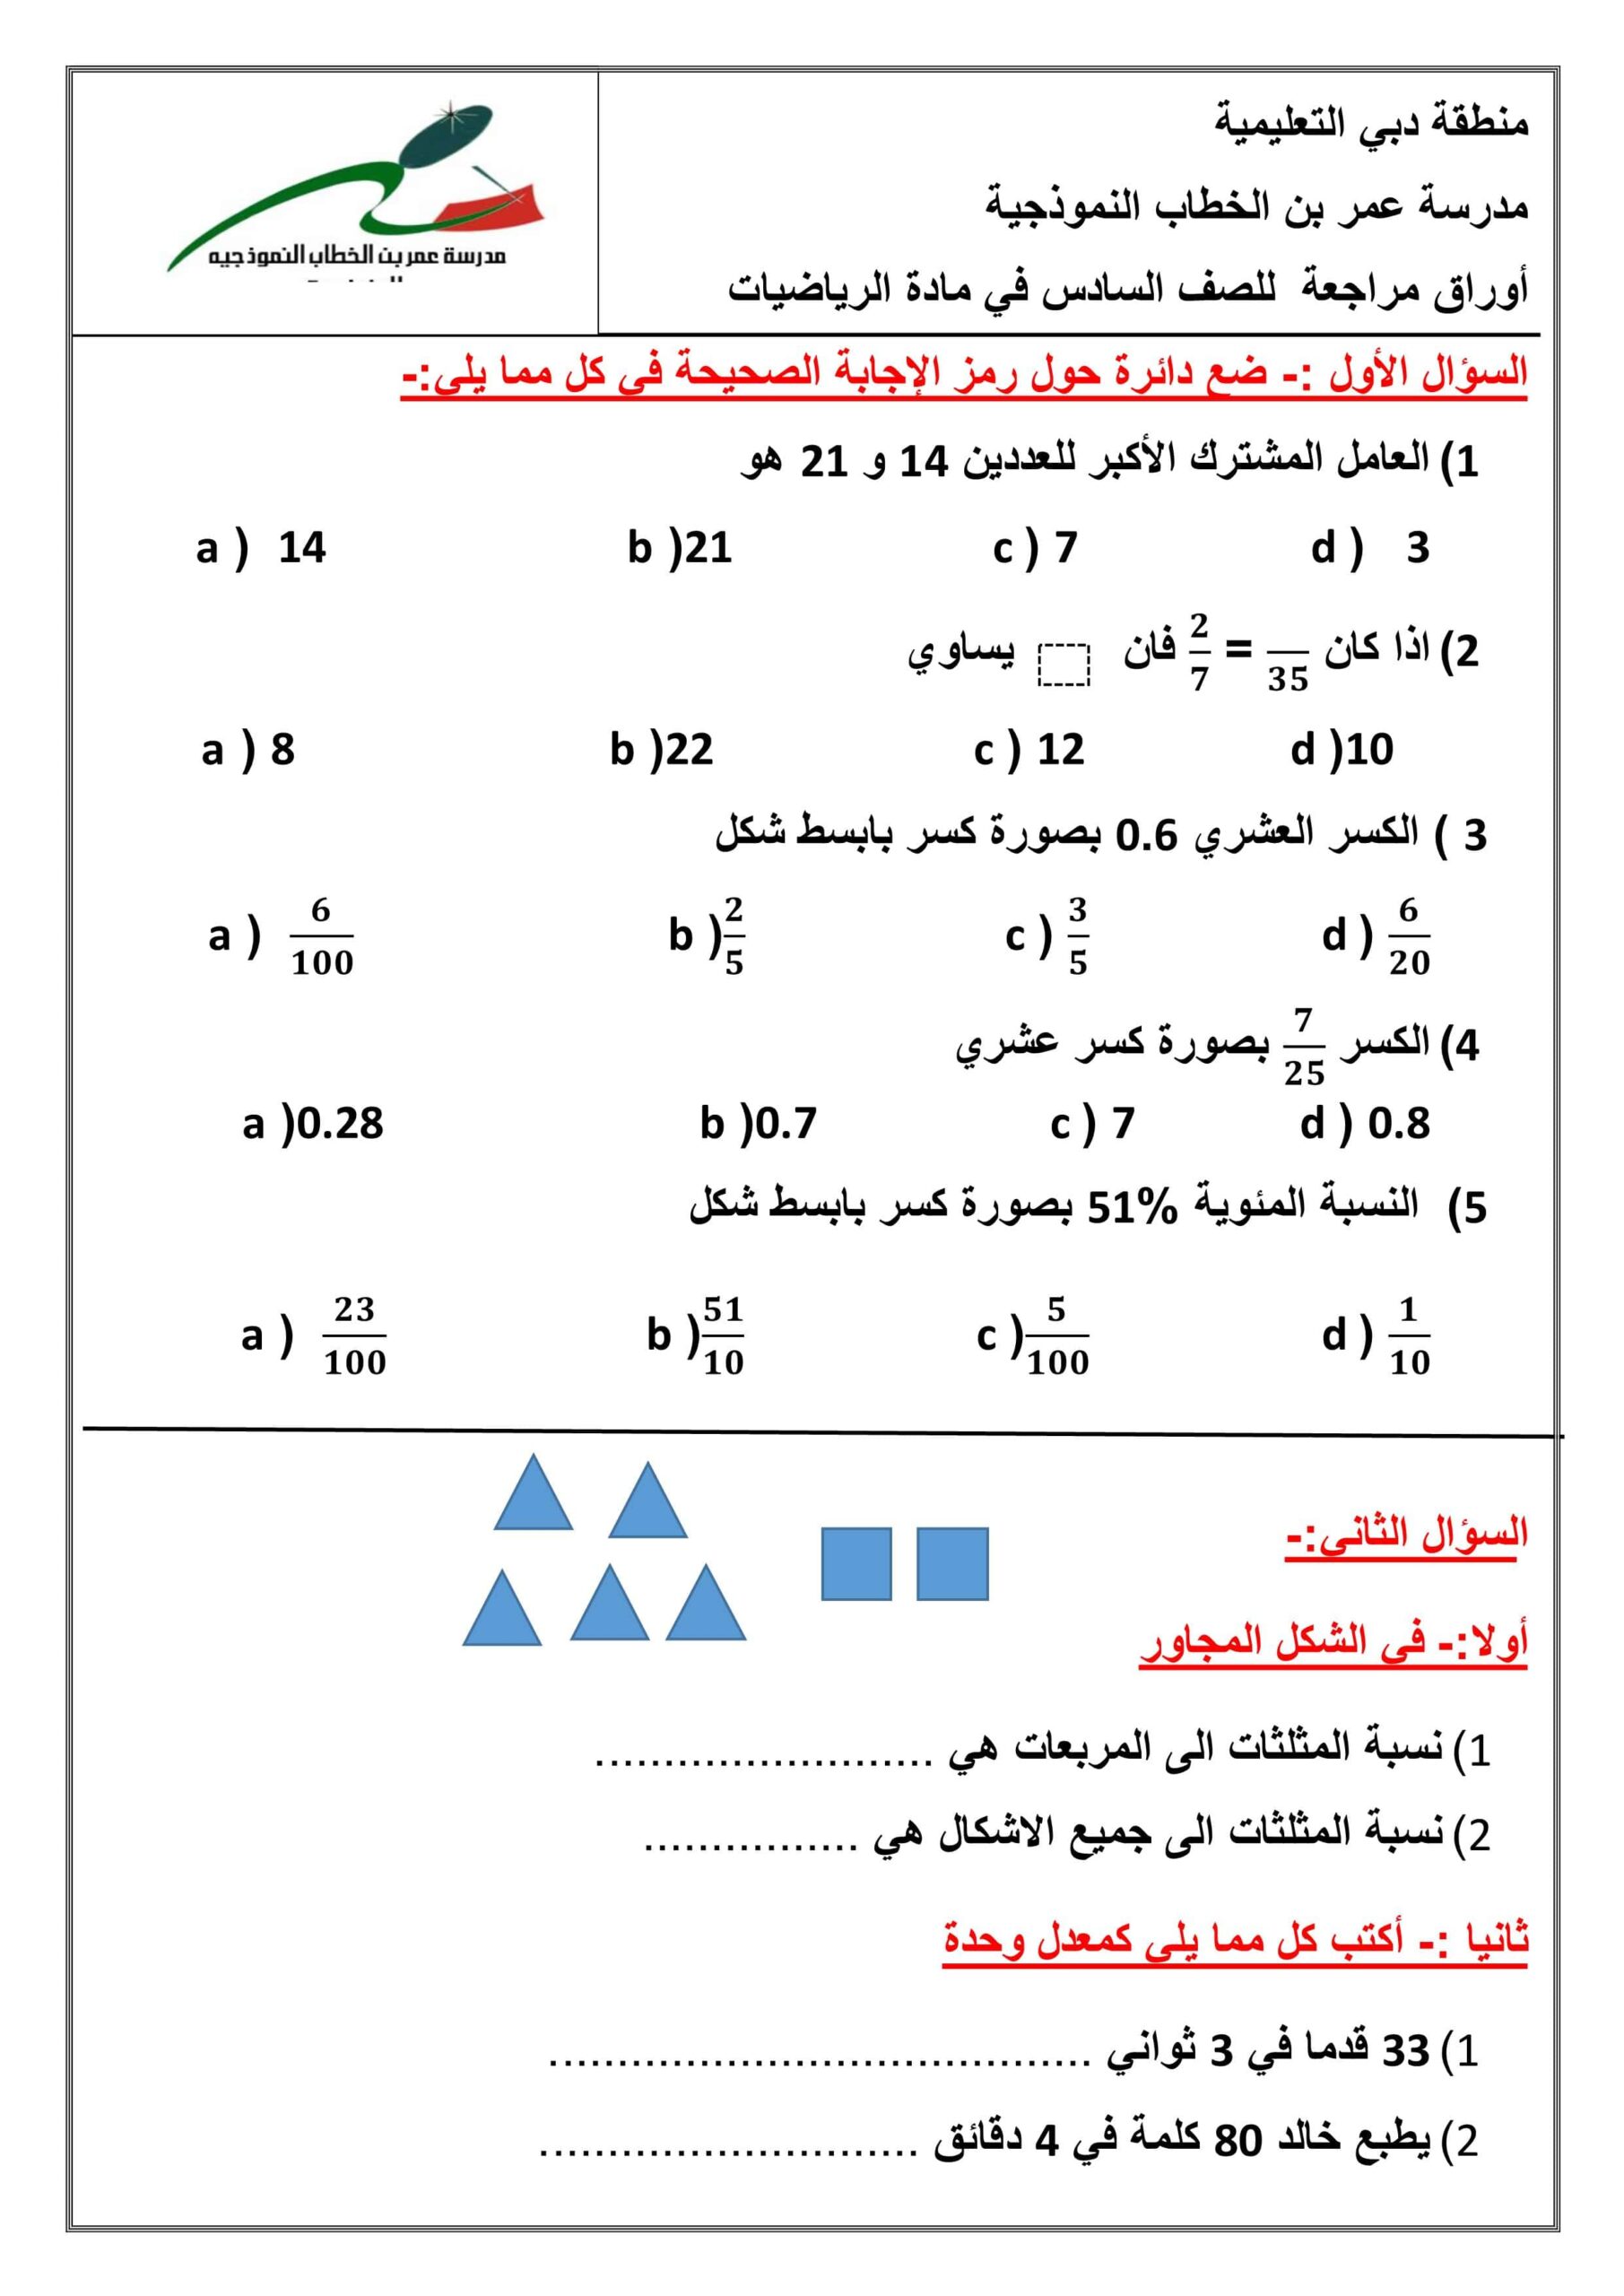 مراجعة لاختبار التقويم الأول الرياضيات المتكاملة الصف السادس